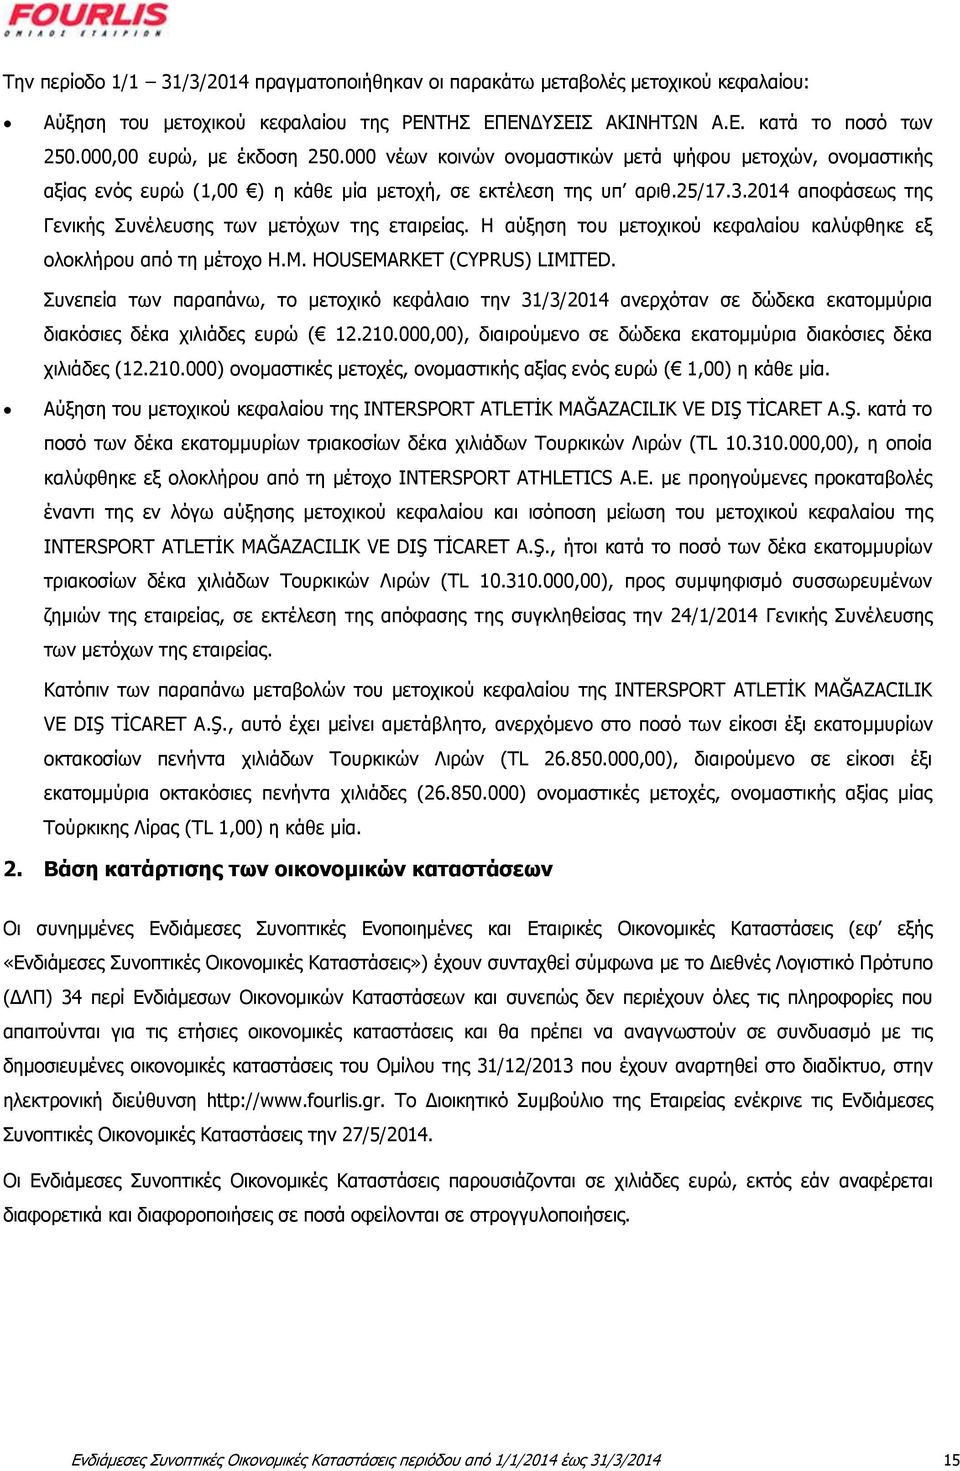 2014 αποφάσεως της Γενικής Συνέλευσης των μετόχων της εταιρείας. Η αύξηση του μετοχικού κεφαλαίου καλύφθηκε εξ ολοκλήρου από τη μέτοχο H.M. HOUSEMARKET (CYPRUS) LIMITED.